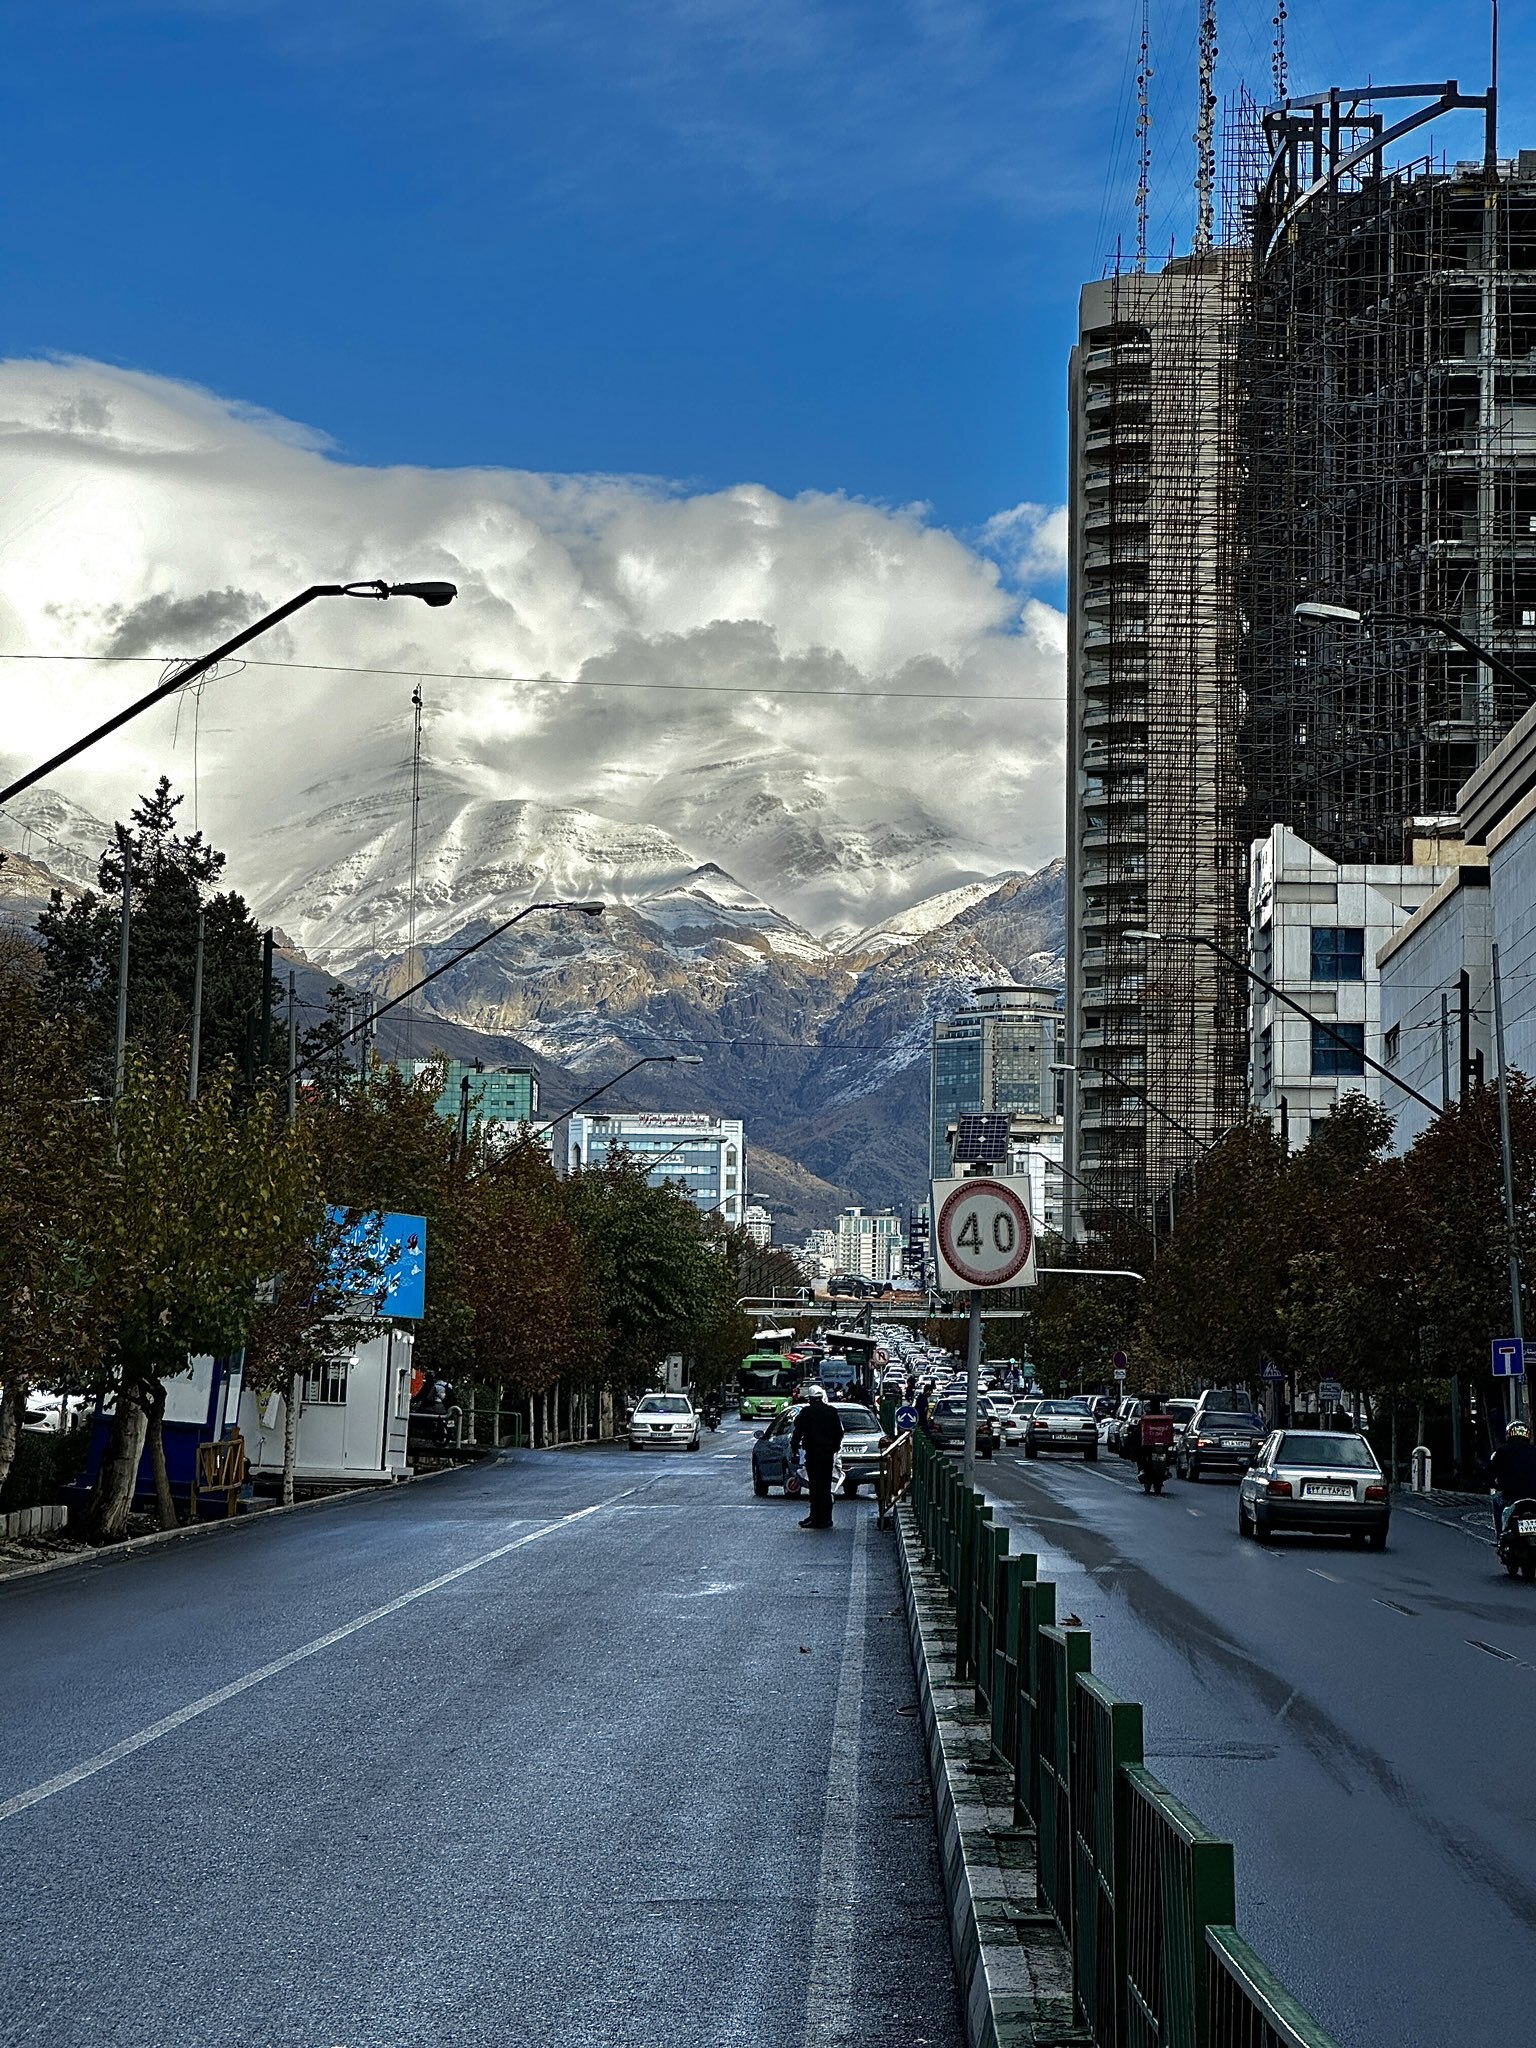 شاید امروز، زیباترین روز پاییز تهران باشد